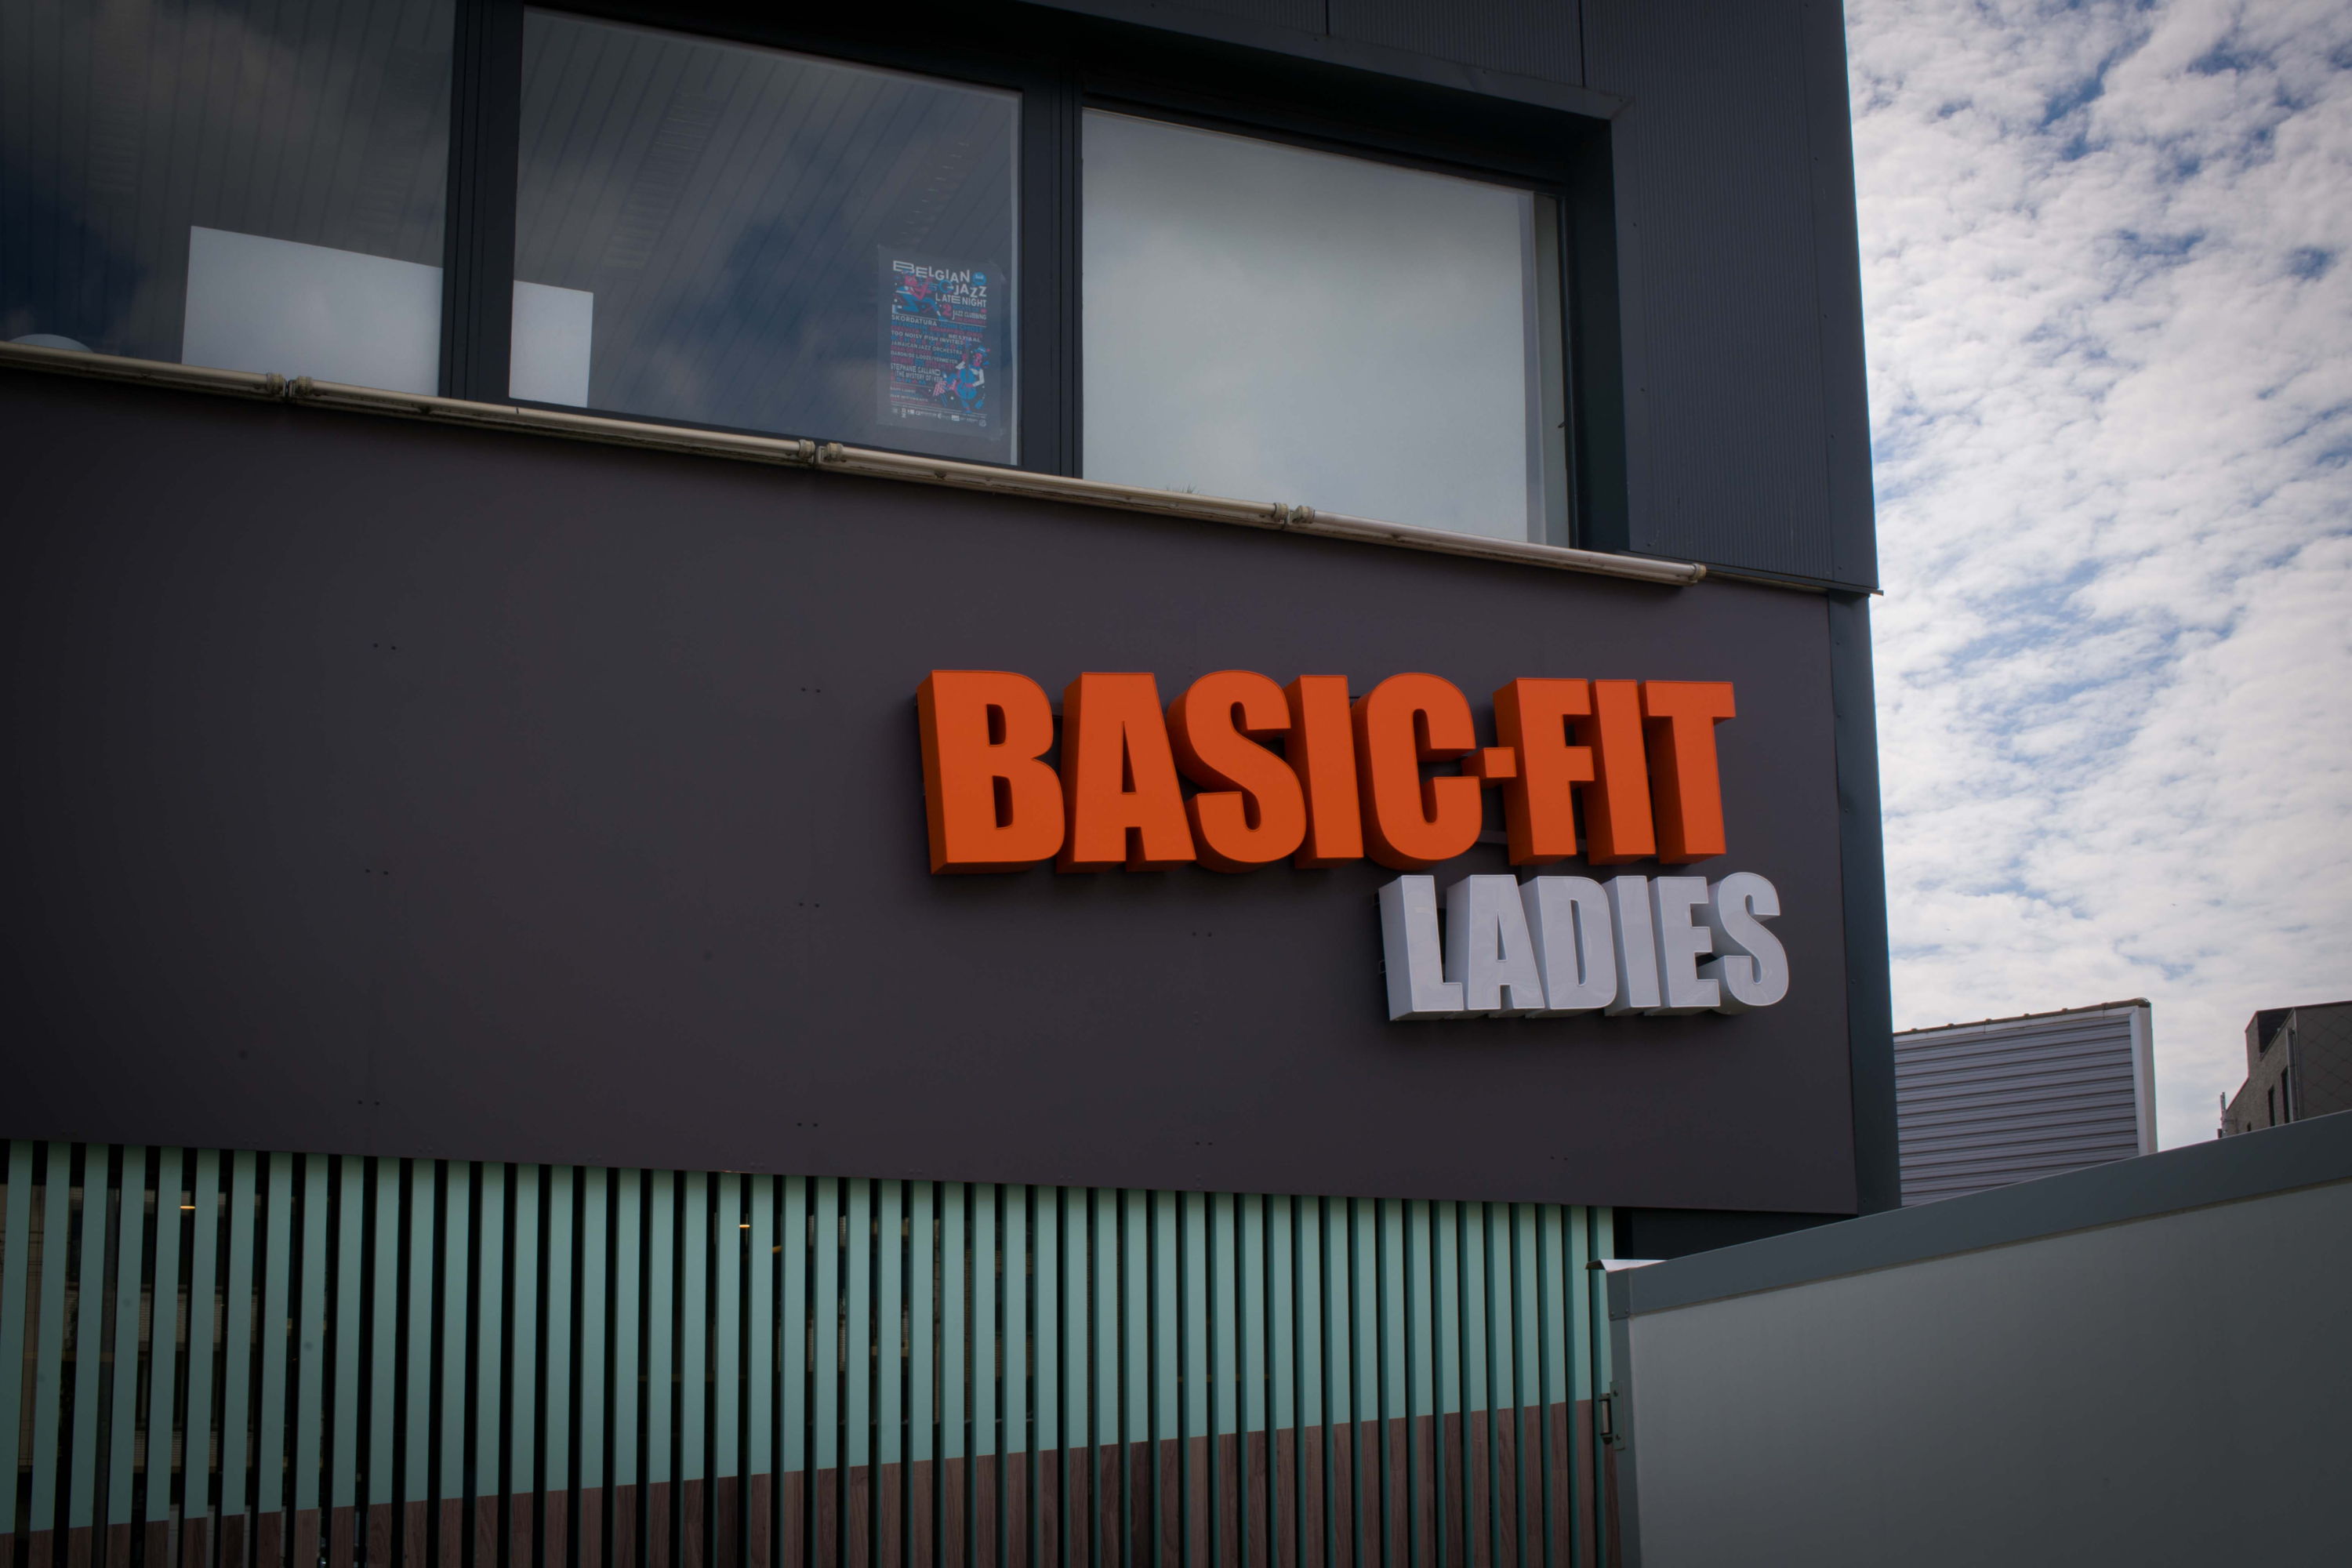 Ontdek het vernieuwde Basic-Fit Ladies concept